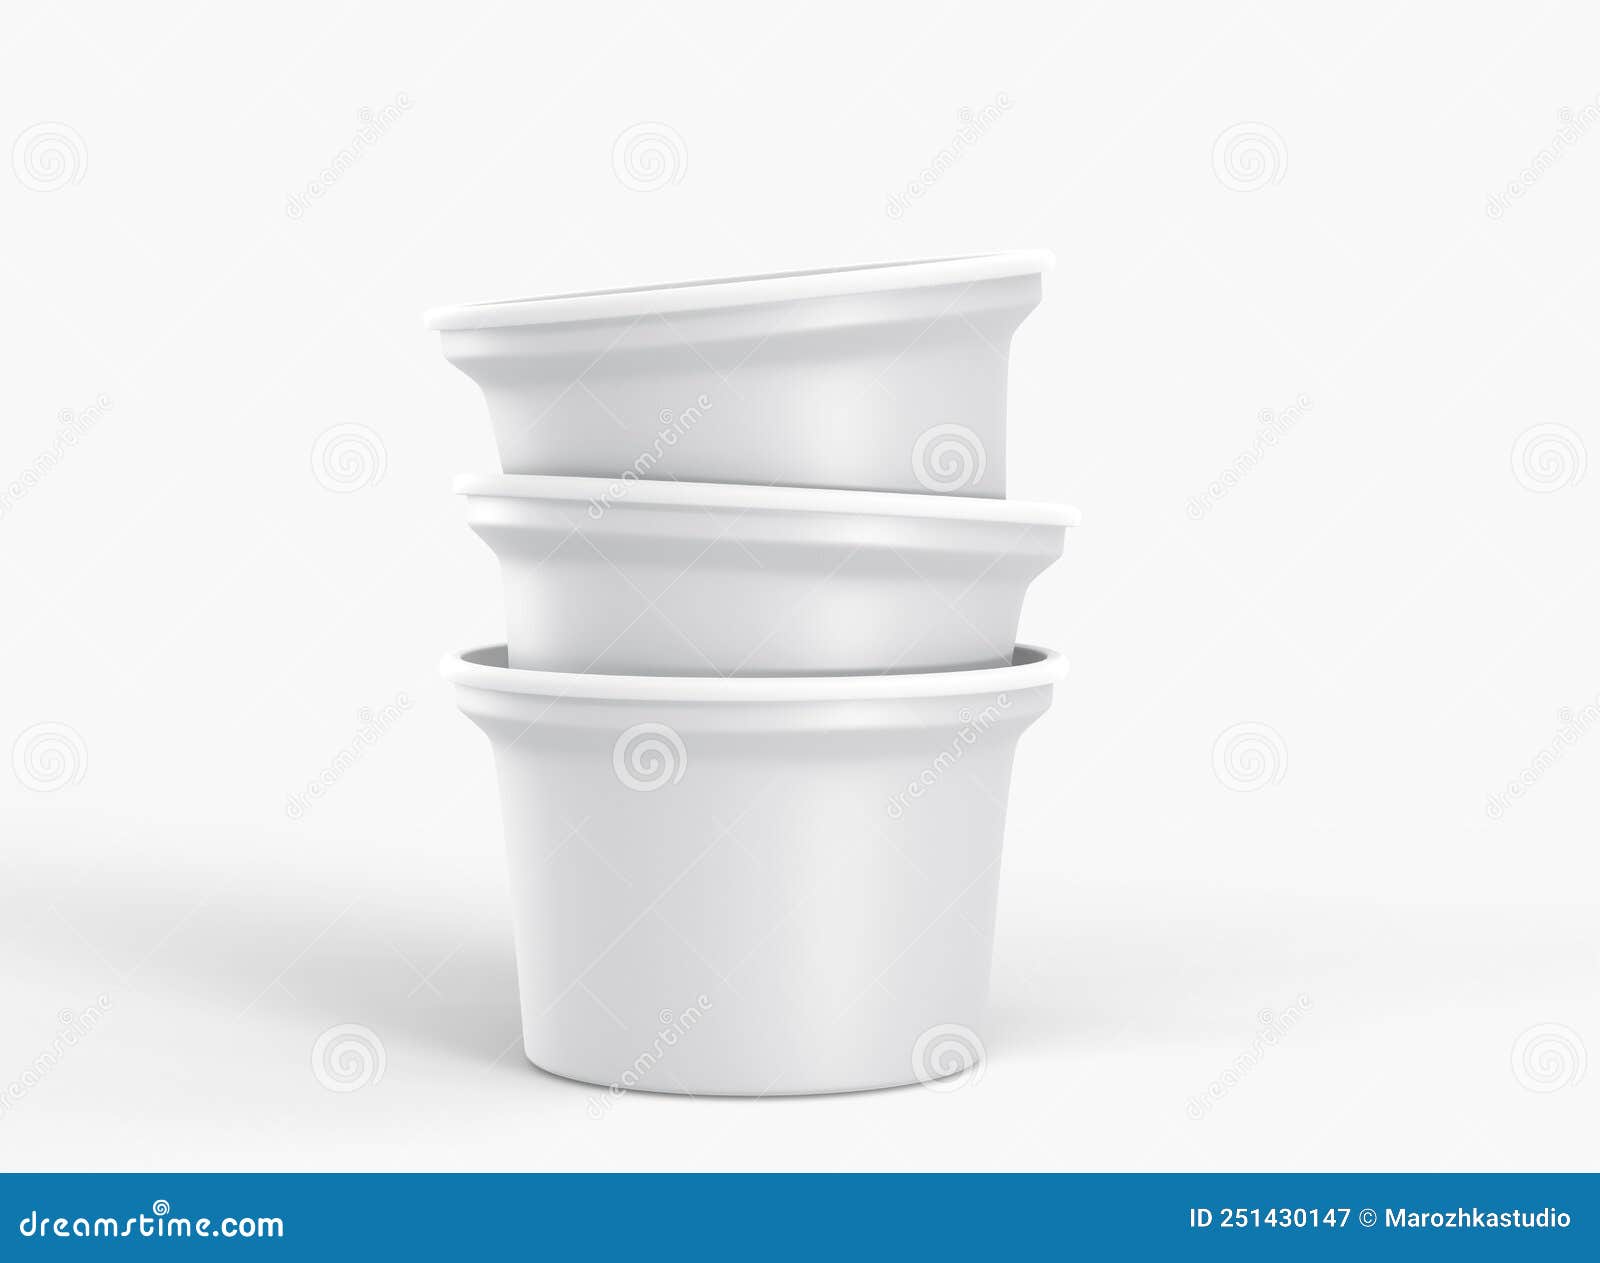 https://thumbs.dreamstime.com/z/impilare-coppe-di-plastica-bianche-per-yogurt-gelato-o-prodotti-lattiero-caseari-serie-realistica-vasetti-tornitura-bianco-con-251430147.jpg